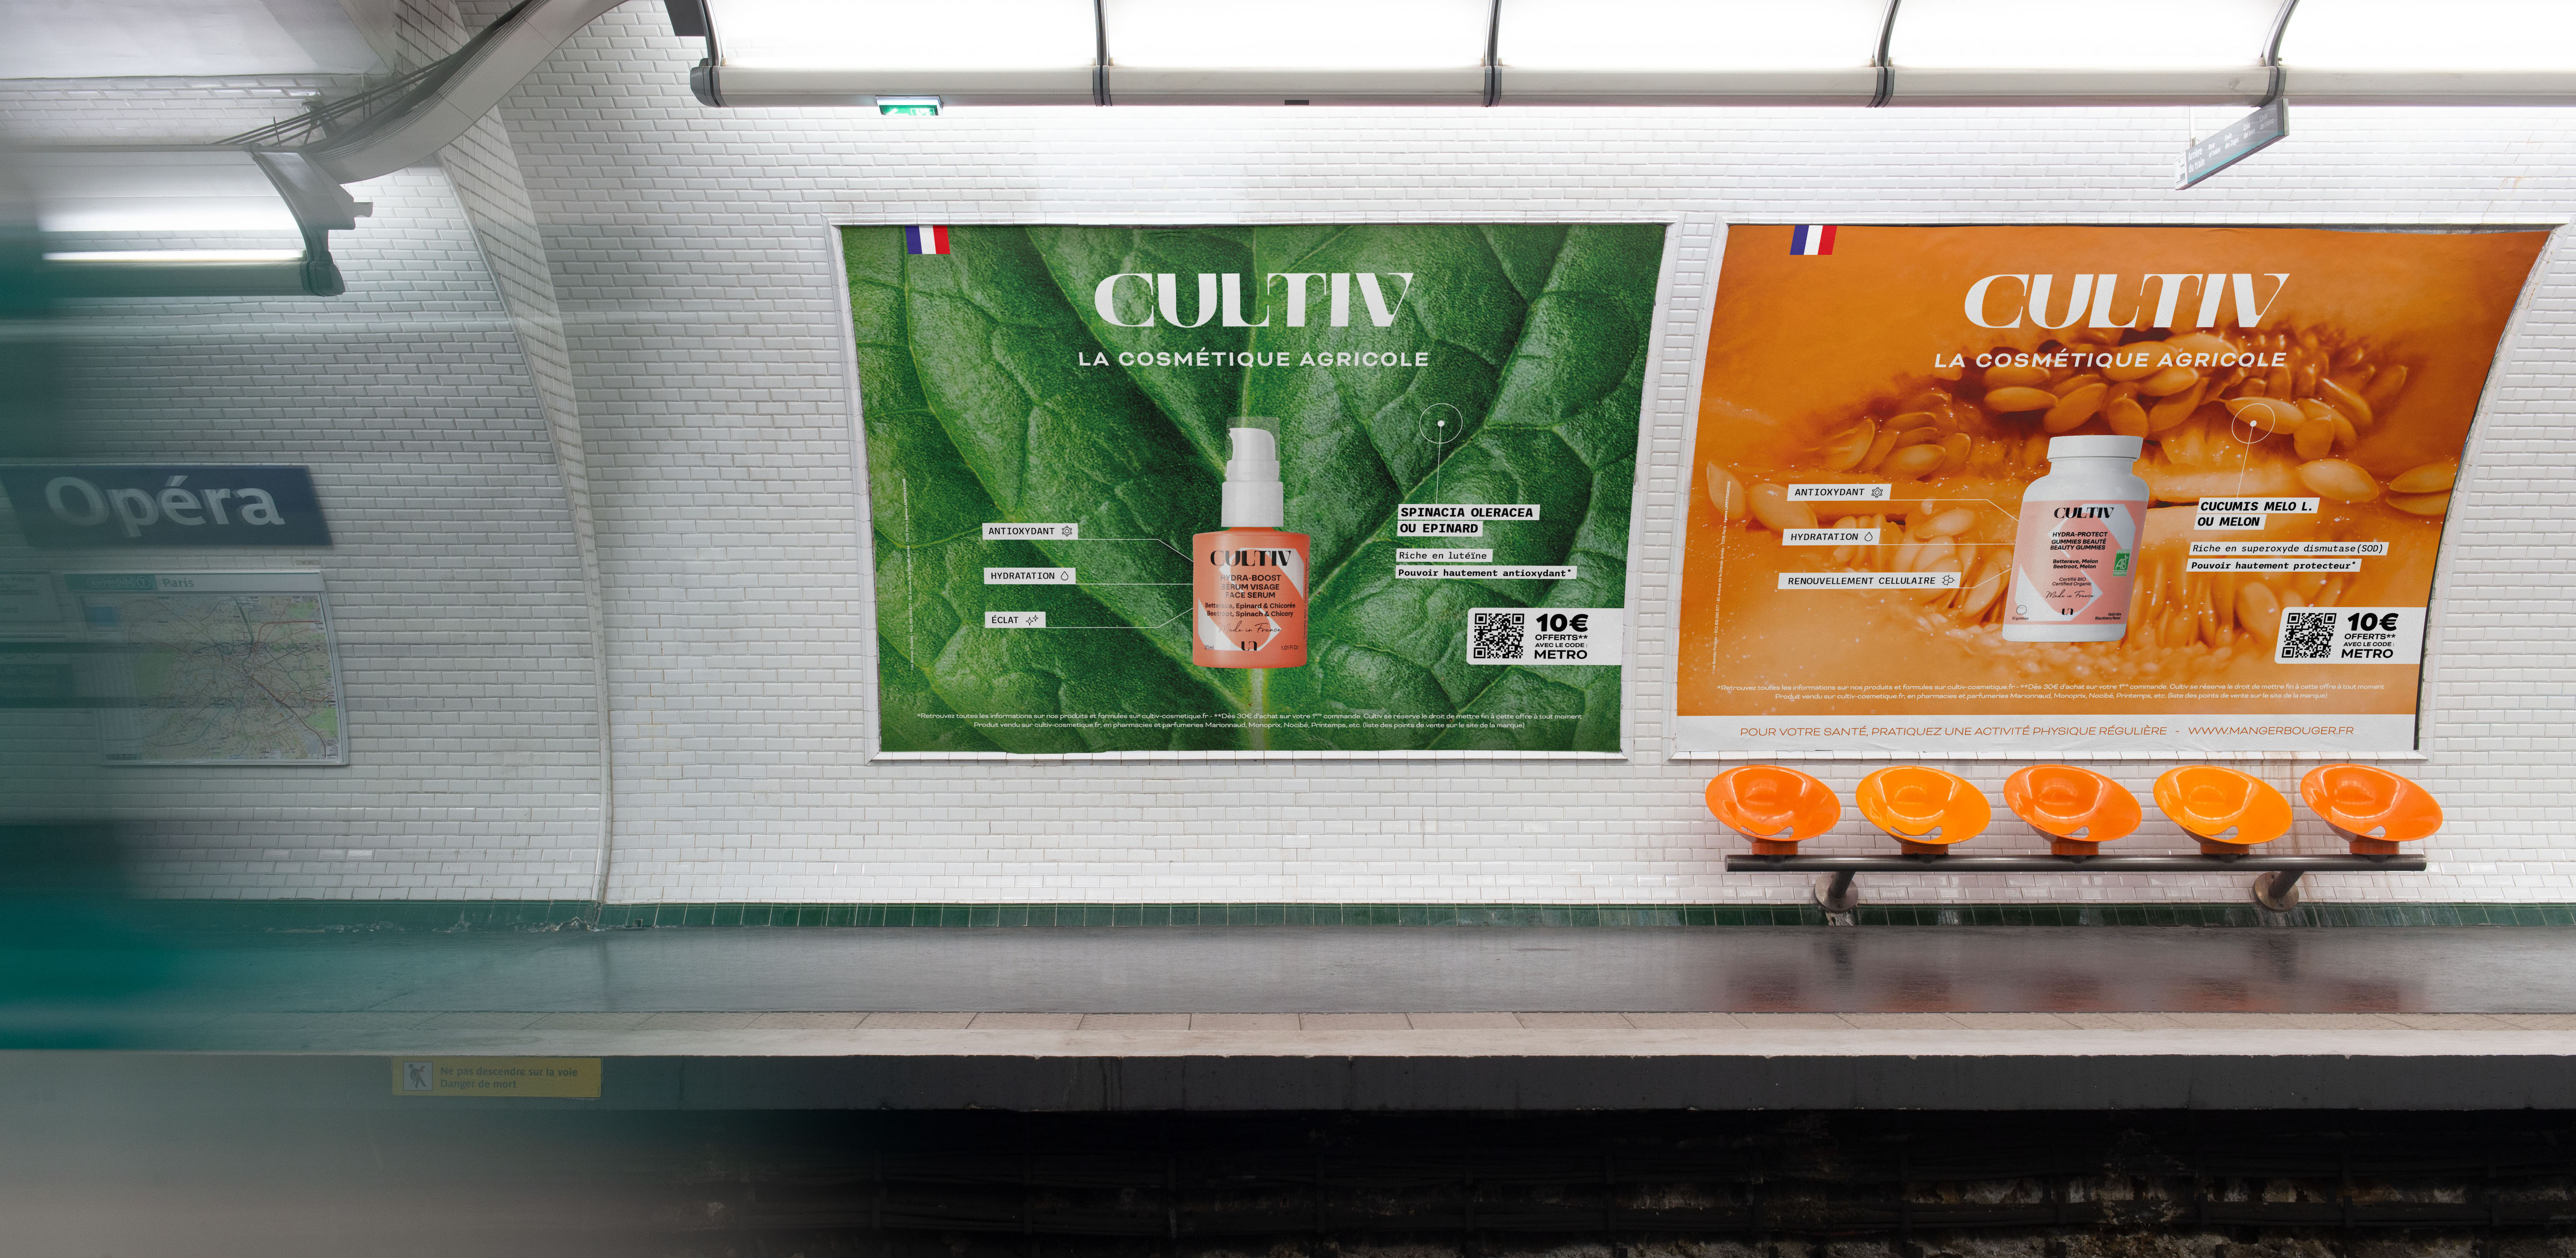 Cultiv cosmétique affichage métro Paris épinard melon